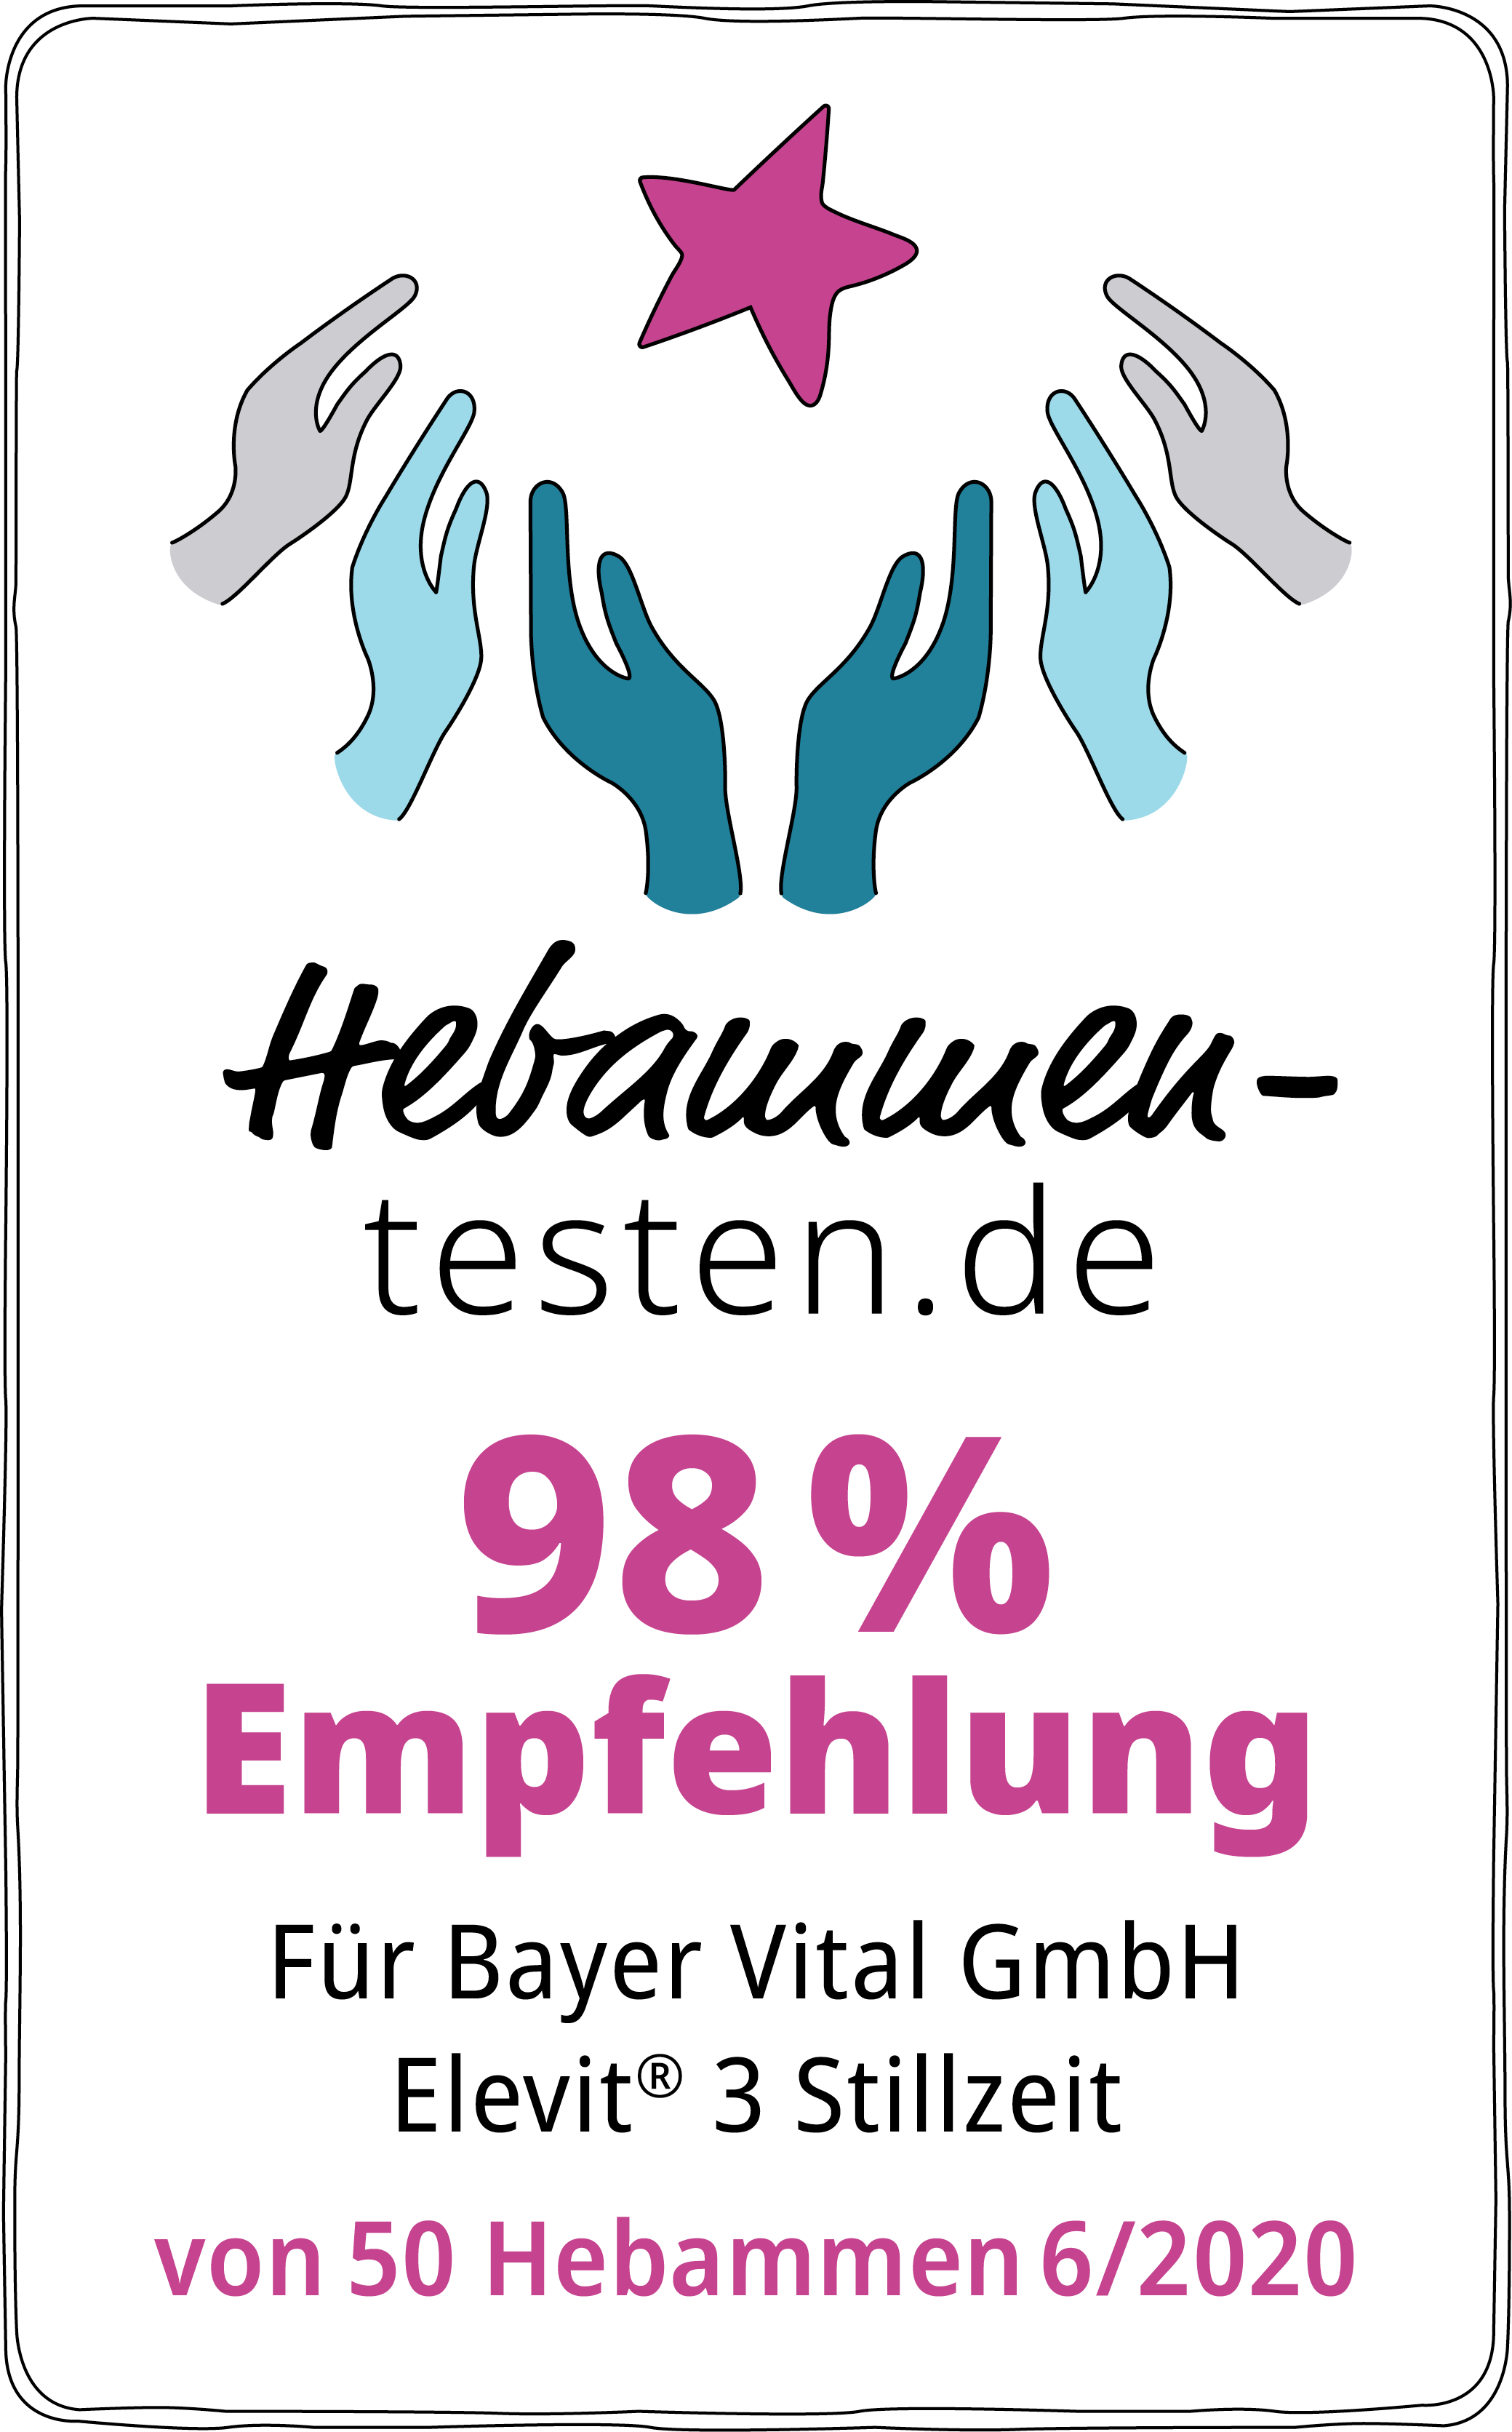 Hebammen-testen.de Siegel für Bayer Vital GmbH Elevit 3 Stillzeit 98 % Empfehlung von 50 Hebammen im Juni 2020 getestet.